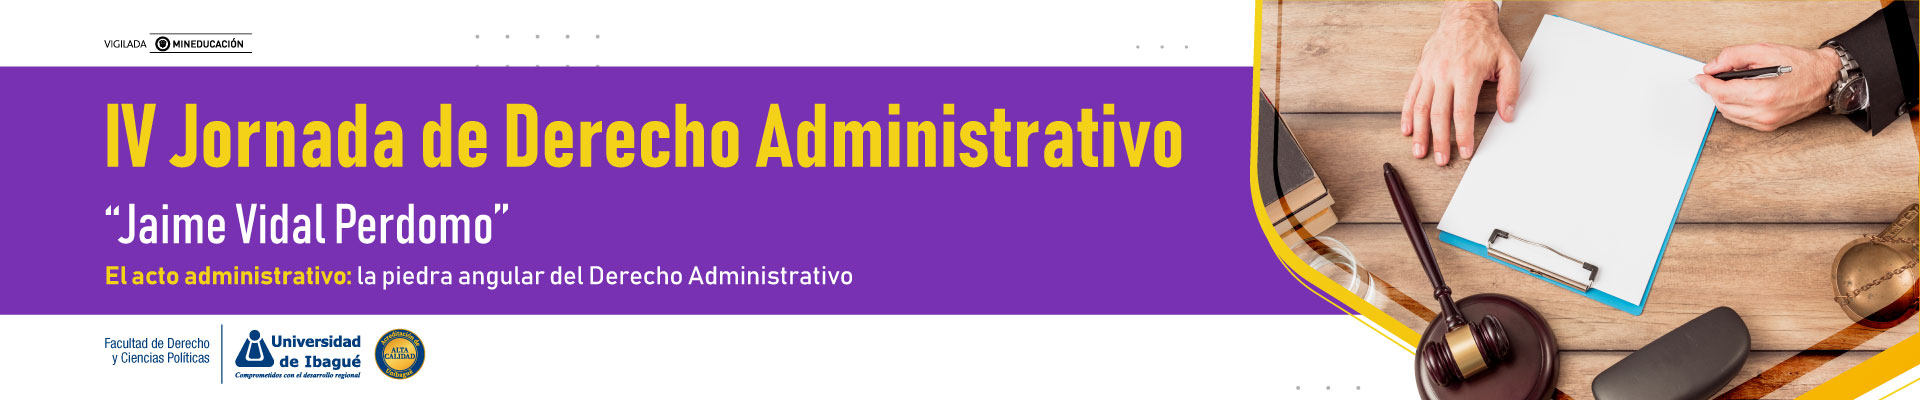  IV JORNADAS DE DERECHO ADMINISTRATIVO “JAIME VIDAL PERDOMO” Tema central: El acto administrativo: la piedra angular del Derecho Administrativo